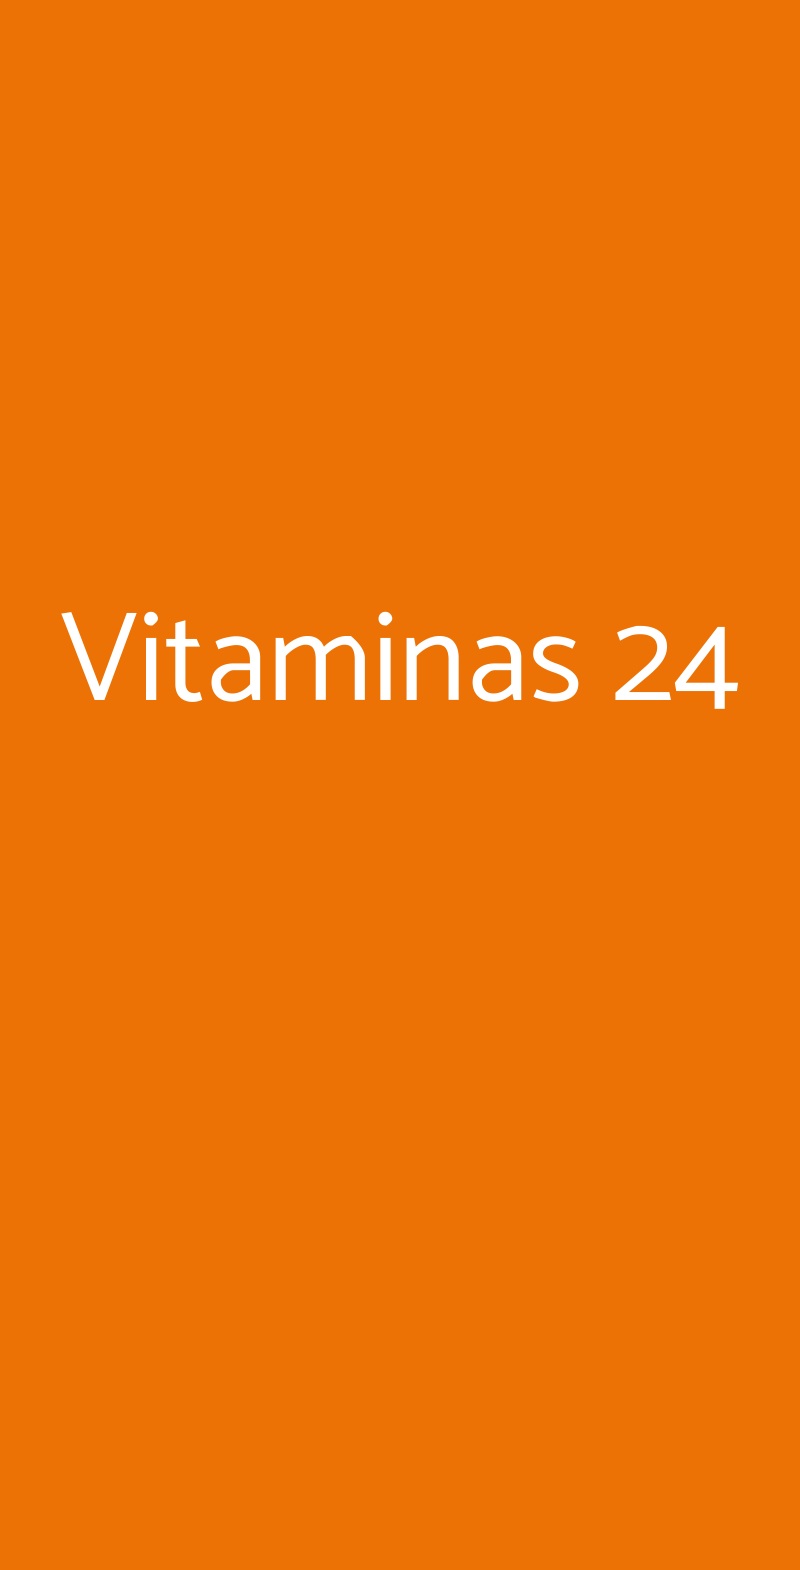 Vitaminas 24 Roma menù 1 pagina